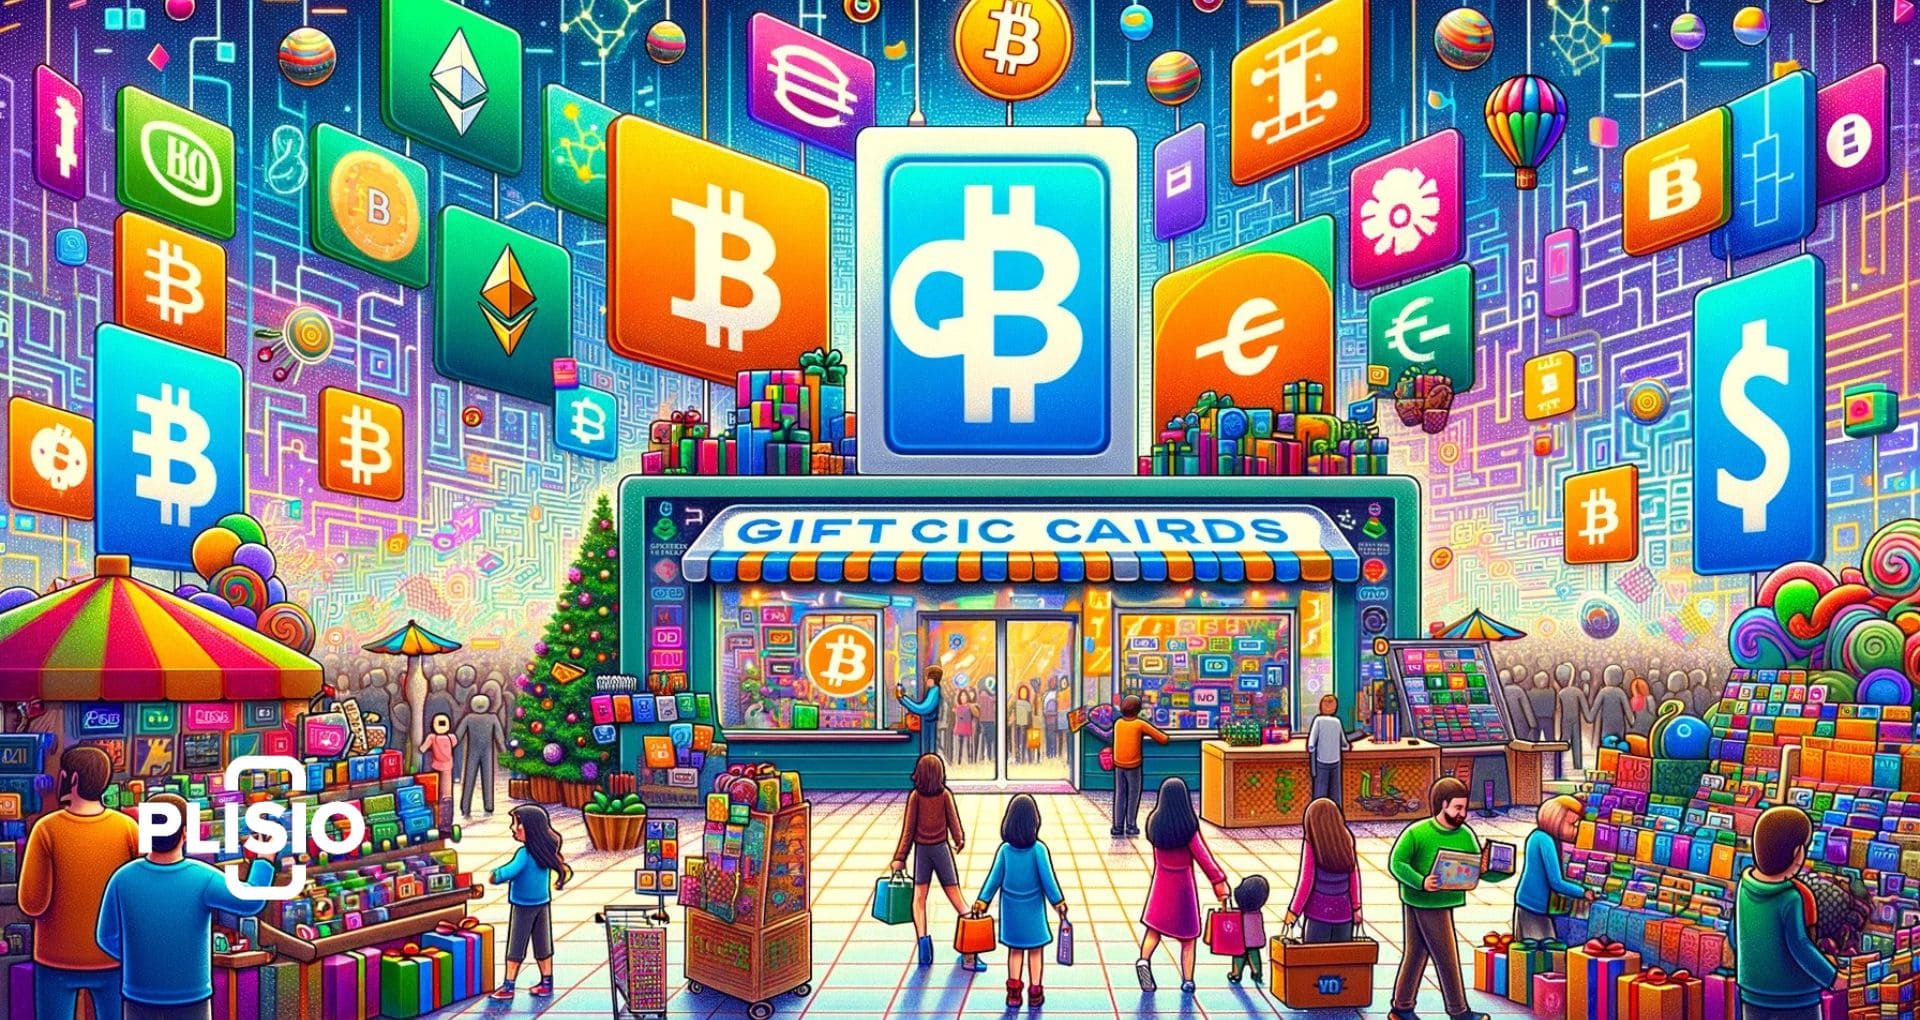 GiftCards Store dévoile une nouvelle ère d'achat de crypto-monnaie